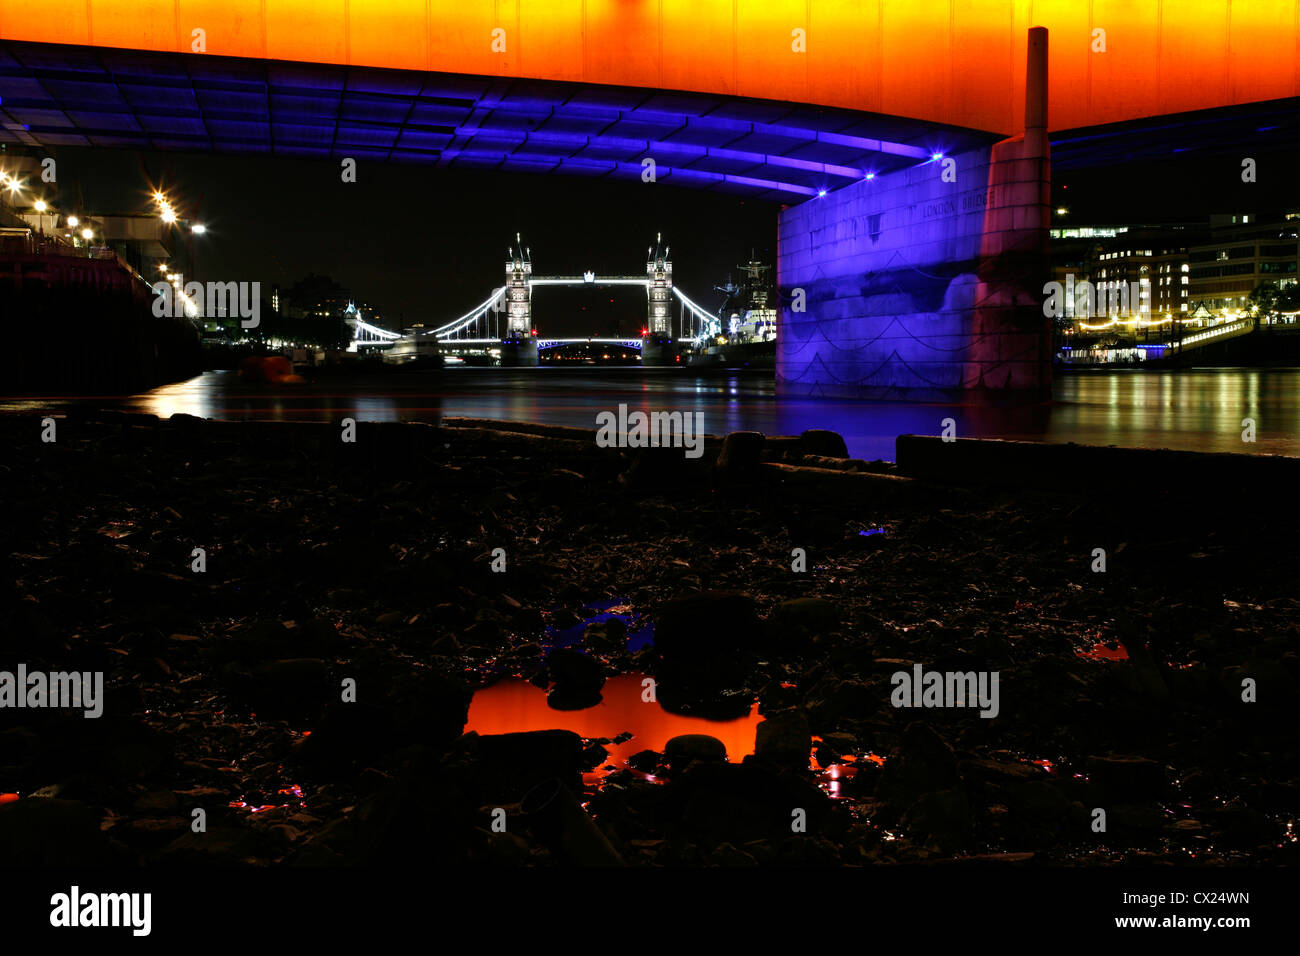 London Bridge und der Tower Bridge beleuchtet bis London 2012 als Teil der Dazzle feiern: Brücke Beleuchtung Projekt, London, UK Stockfoto